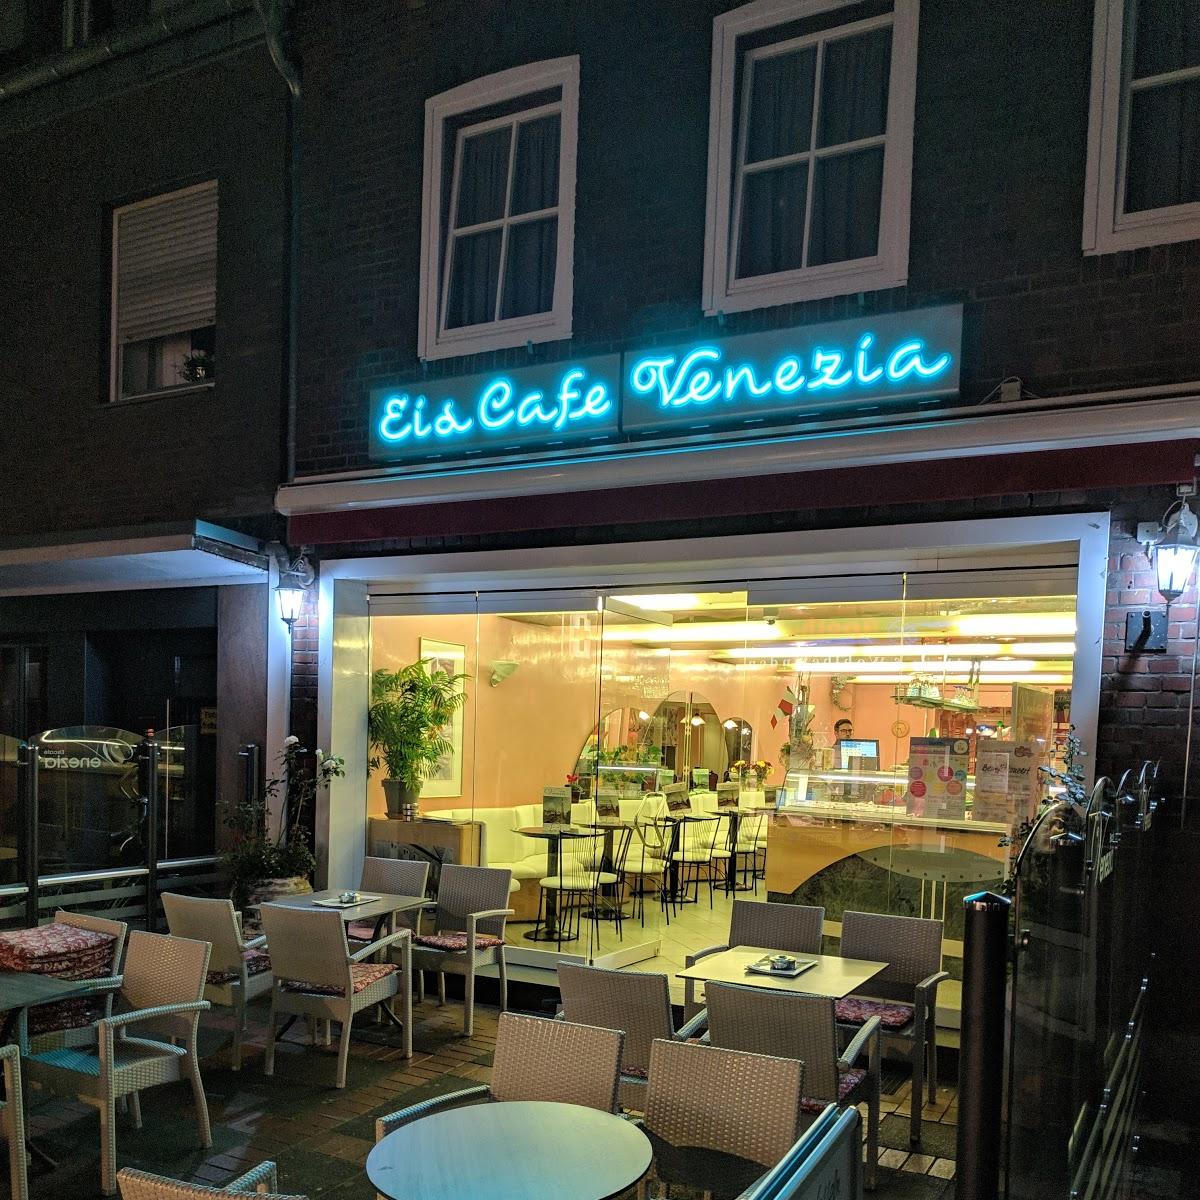 Restaurant "Eiscafe Venezia" in Vreden